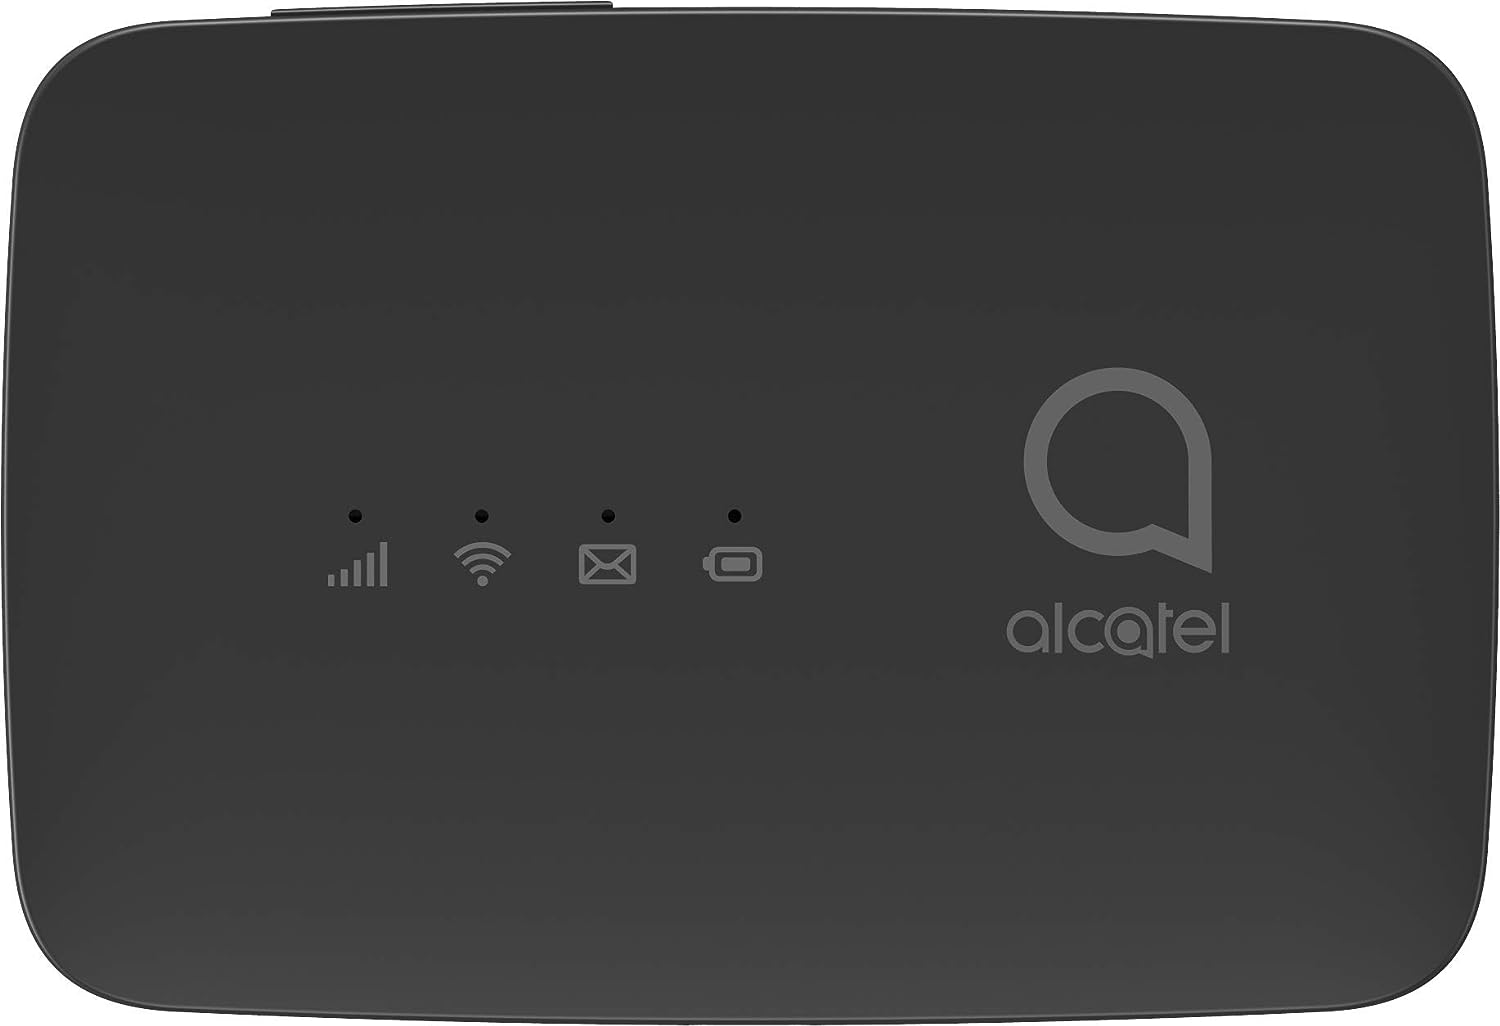 Alcatel Link Zone - MW45V2 Modem Mobile 4G, LTE (CAT.4), WiFi, Hotspot bis zu 15 Benutzer, Akku 2150mAh, Black